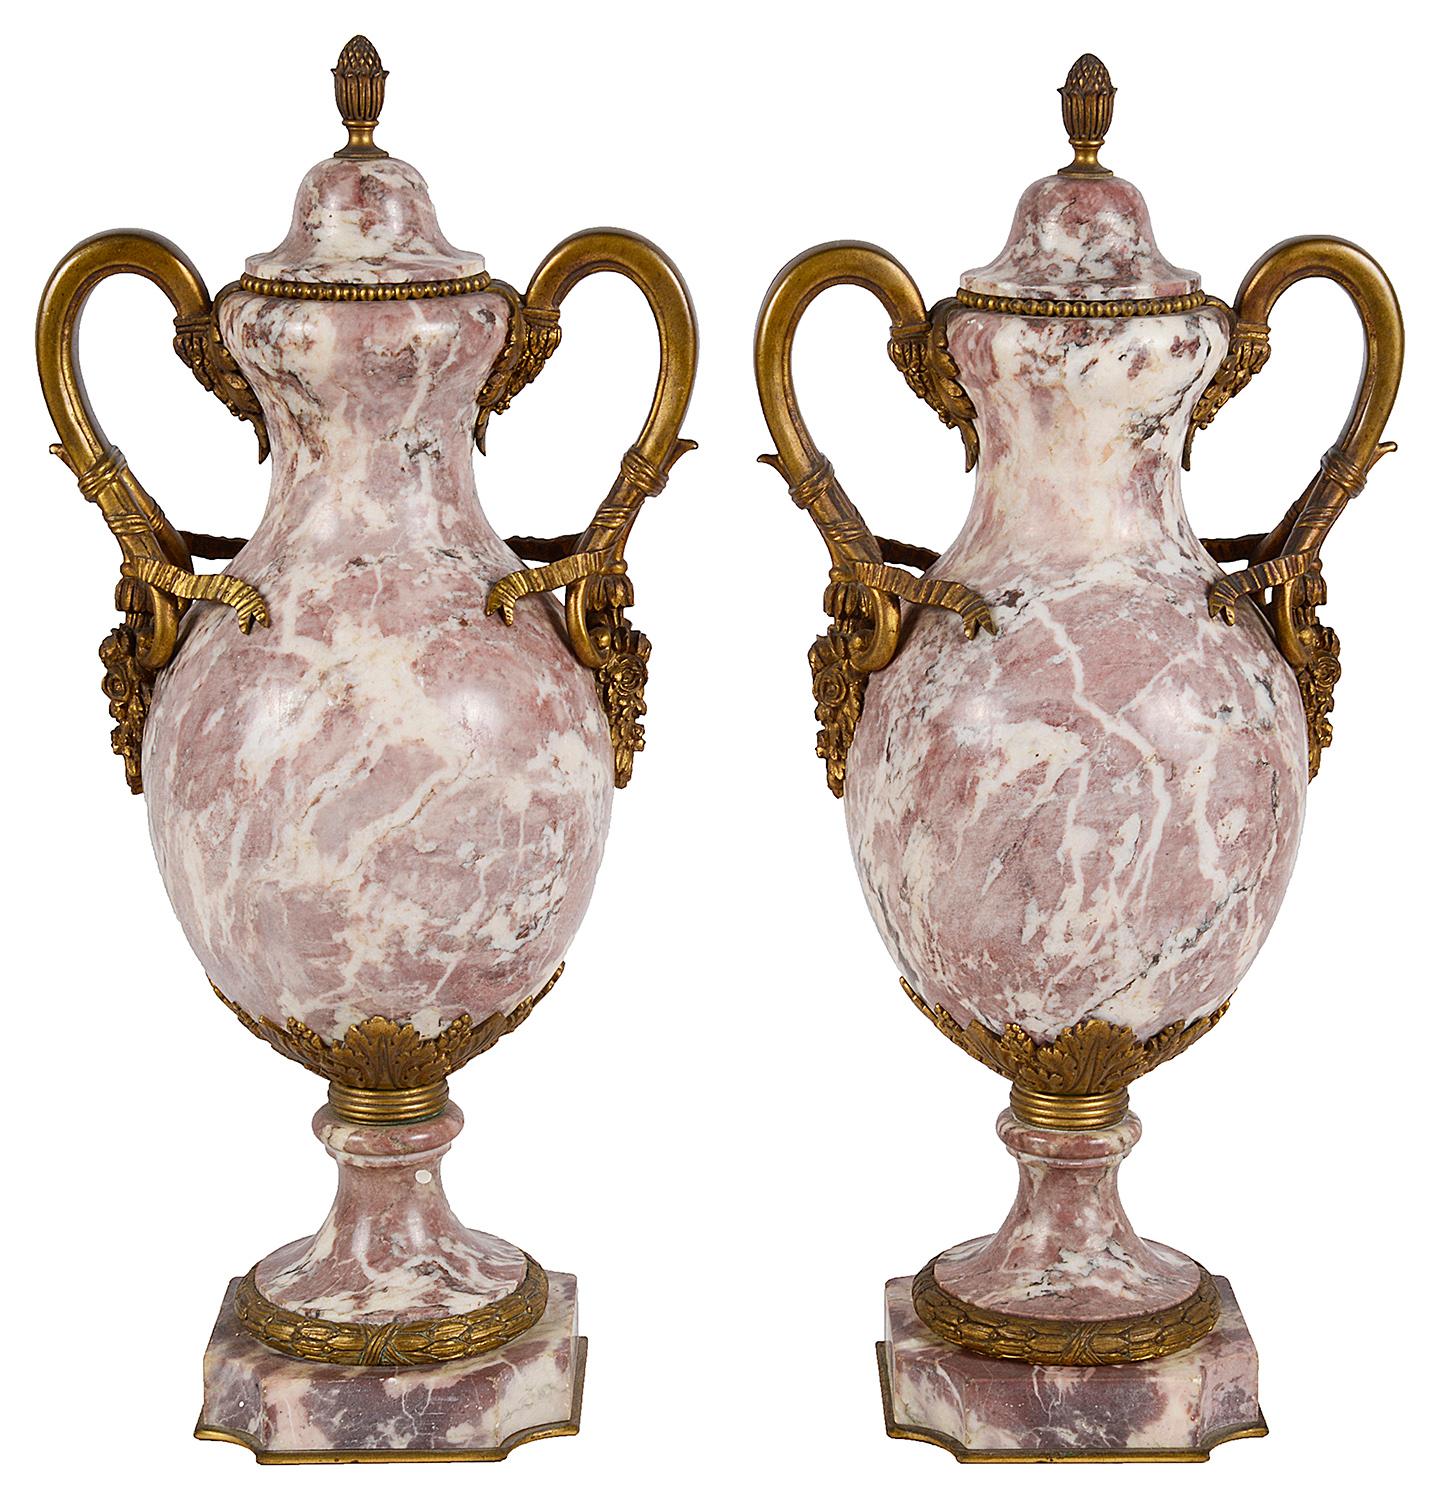 Ein hochwertiges Paar französischer Urnen mit Deckel aus Breccia-Marmor aus dem 19. Jahrhundert, mit wunderbaren Figuren, vergoldeten Ormolu-Rollenbändern und Blumendekorationen, die auf Sockeln stehen. Maße: 19